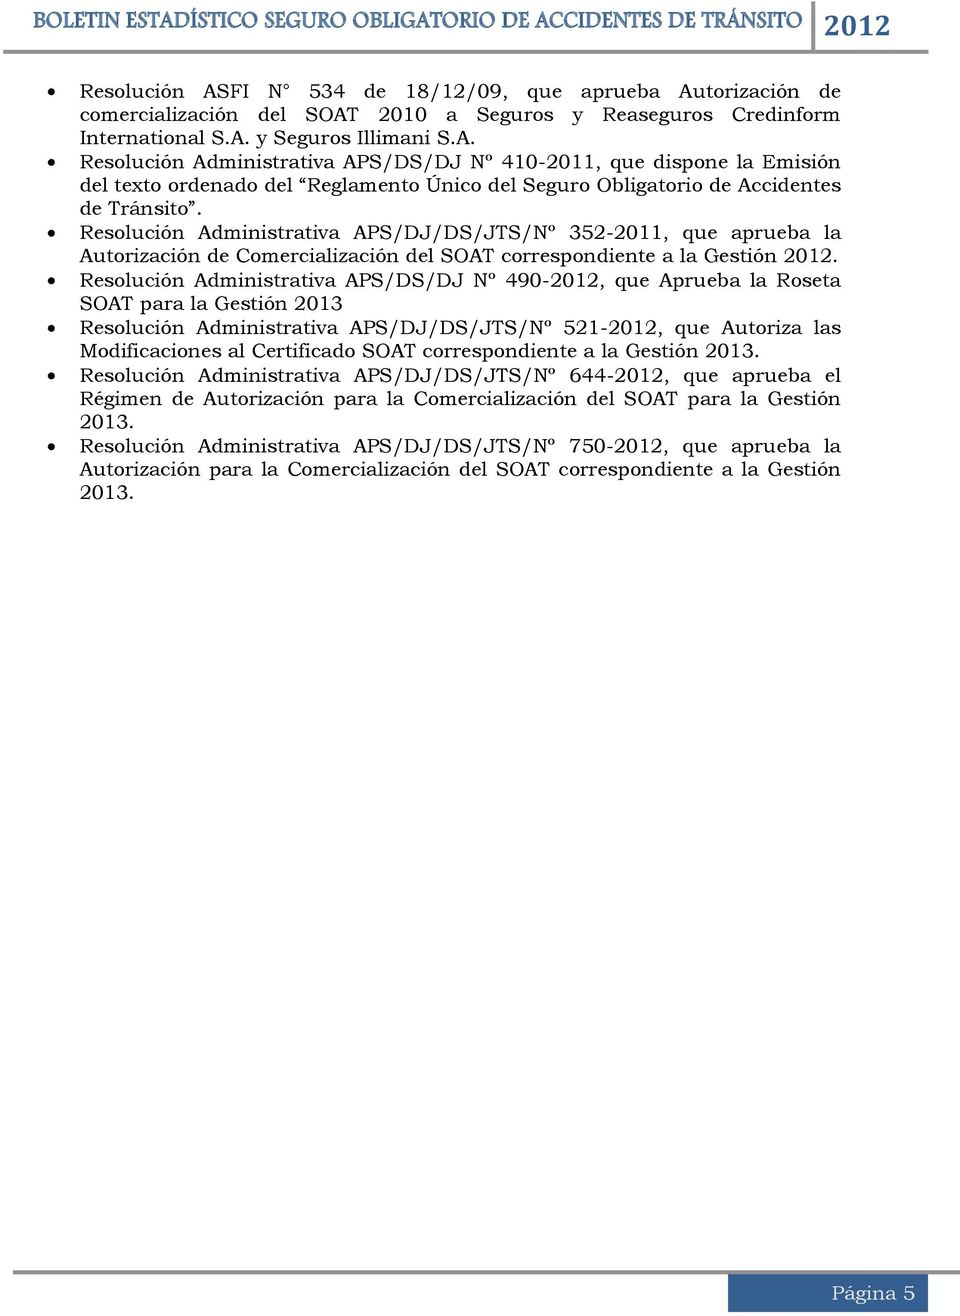 Resolución Administrativa APS/DS/DJ Nº 490-2012, que Aprueba la Roseta SOAT para la Gestión 2013 Resolución Administrativa APS/DJ/DS/JTS/Nº 521-2012, que Autoriza las Modificaciones al Certificado